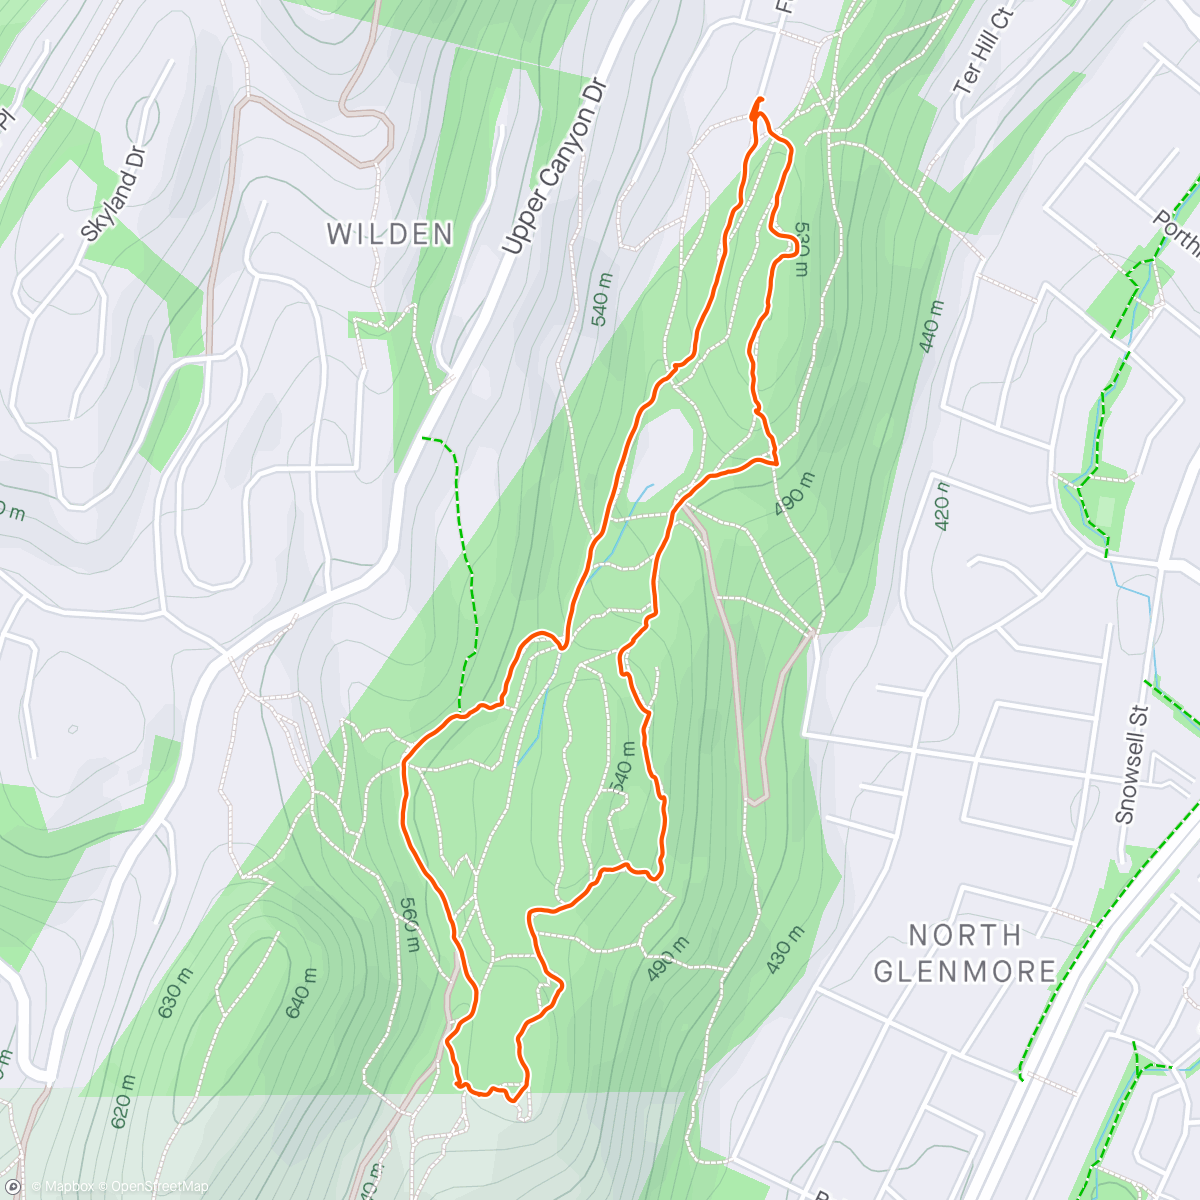 アクティビティ「Hiking around Glenmore area with Chalan」の地図